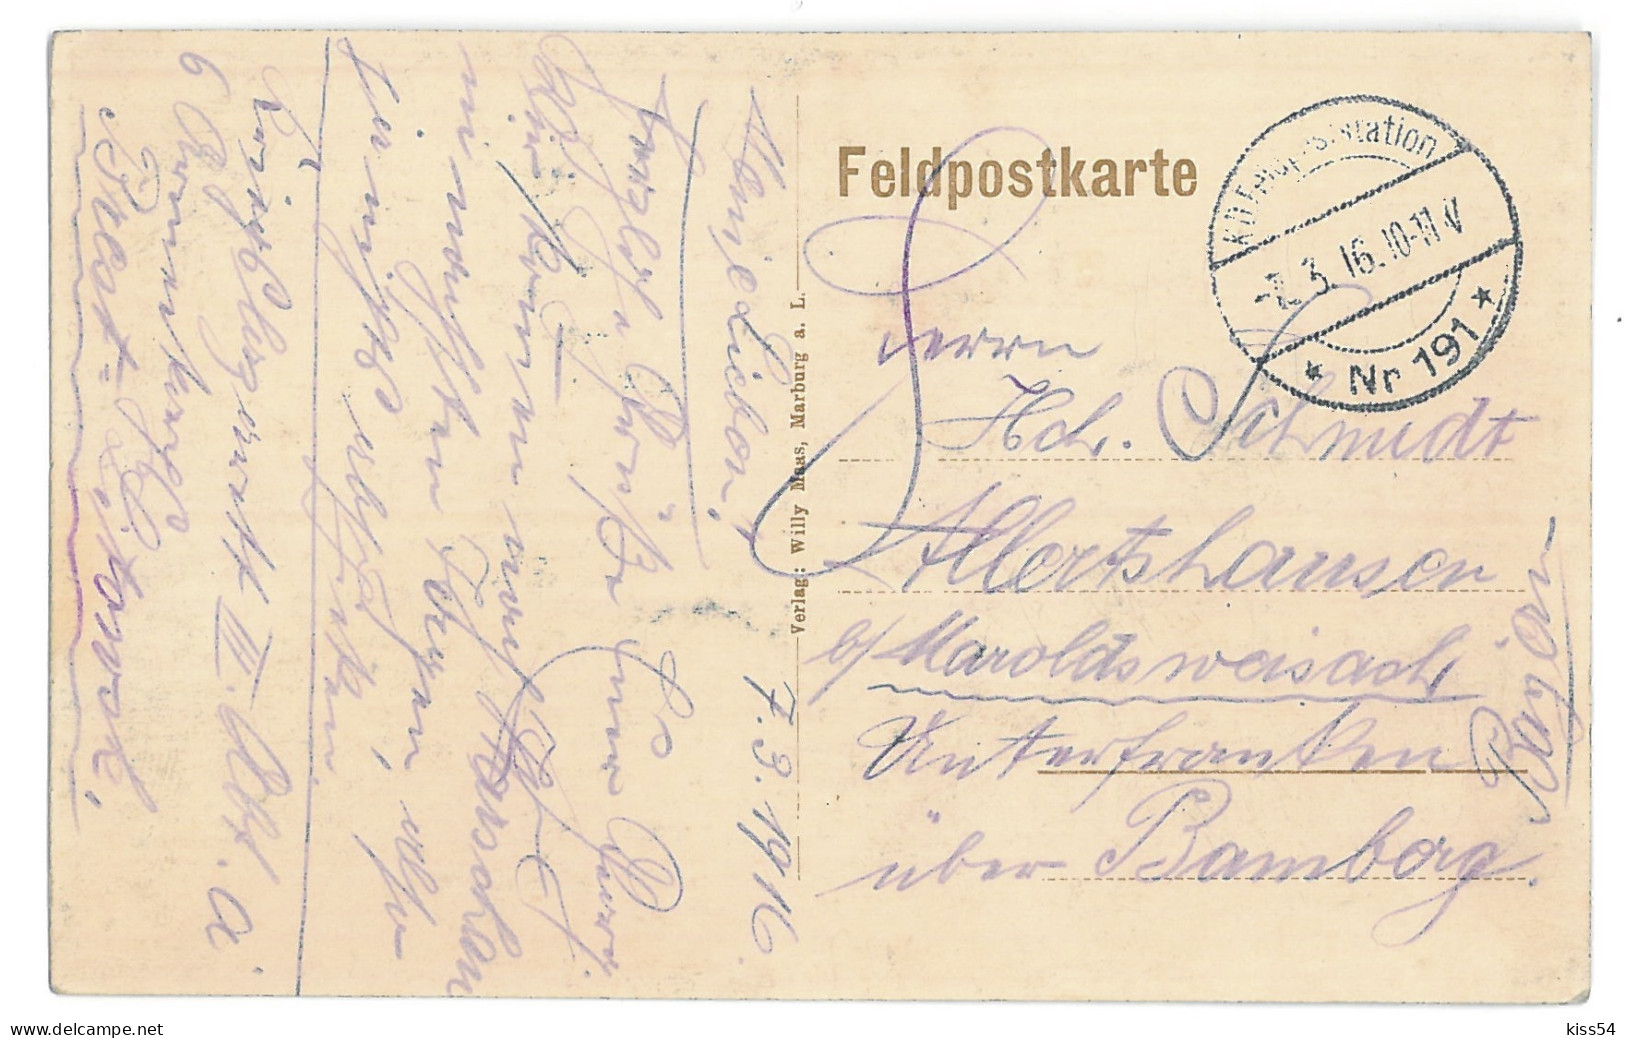 BL 35 - 14070 BREST LITOWSK, Belarus, Bombed Houses - Old Postcard, CENSOR - 1916 - Wit-Rusland